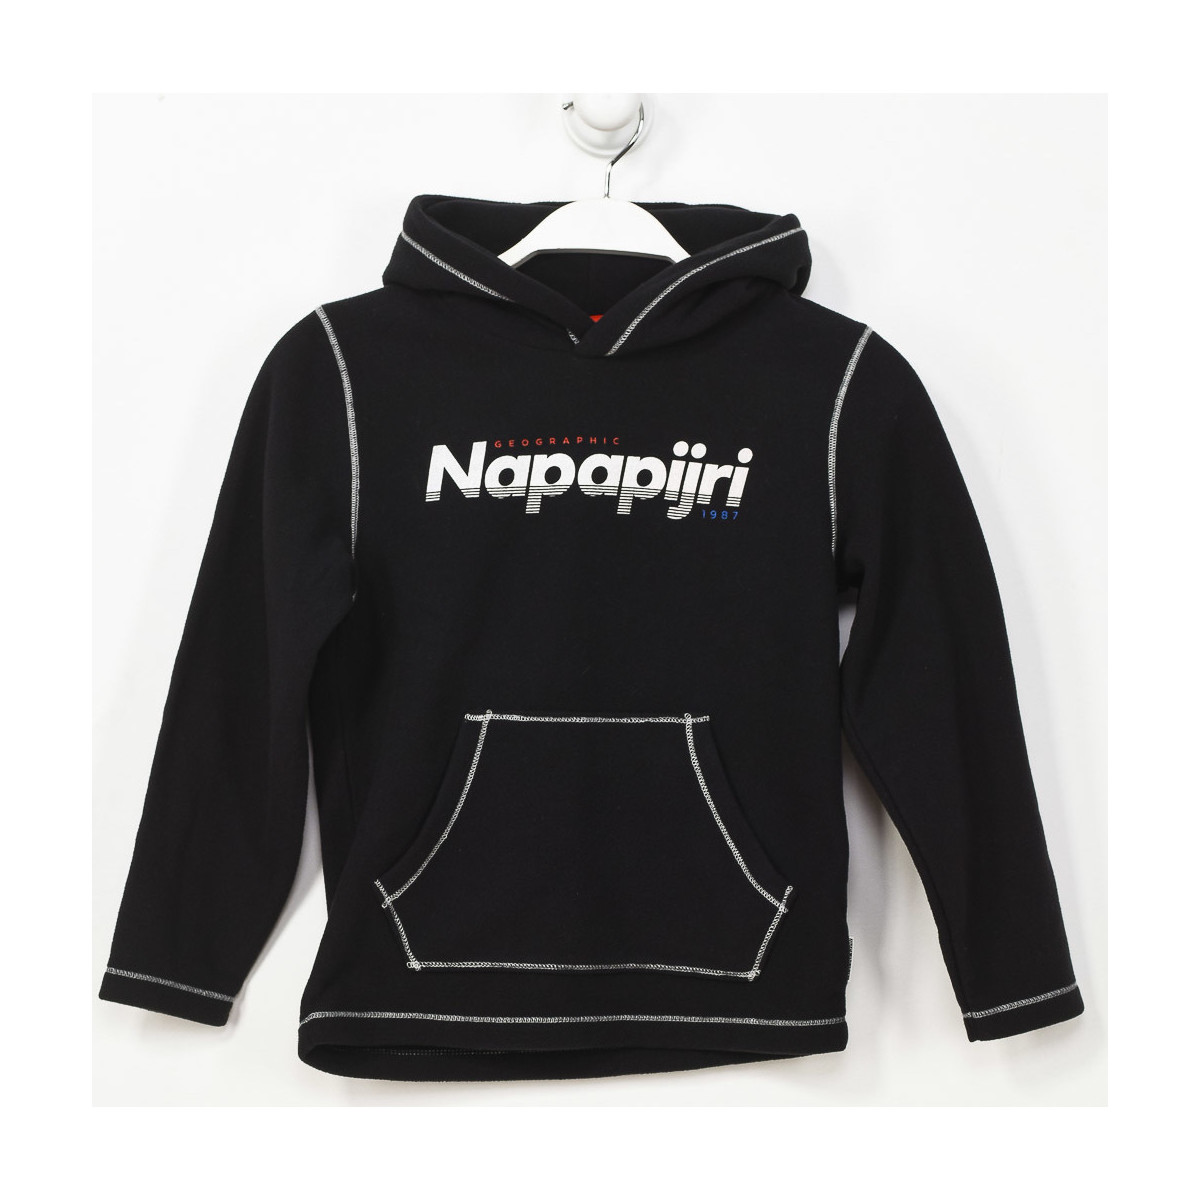 Textiel Jongens Sweaters / Sweatshirts Napapijri GA4EPP-041 Zwart